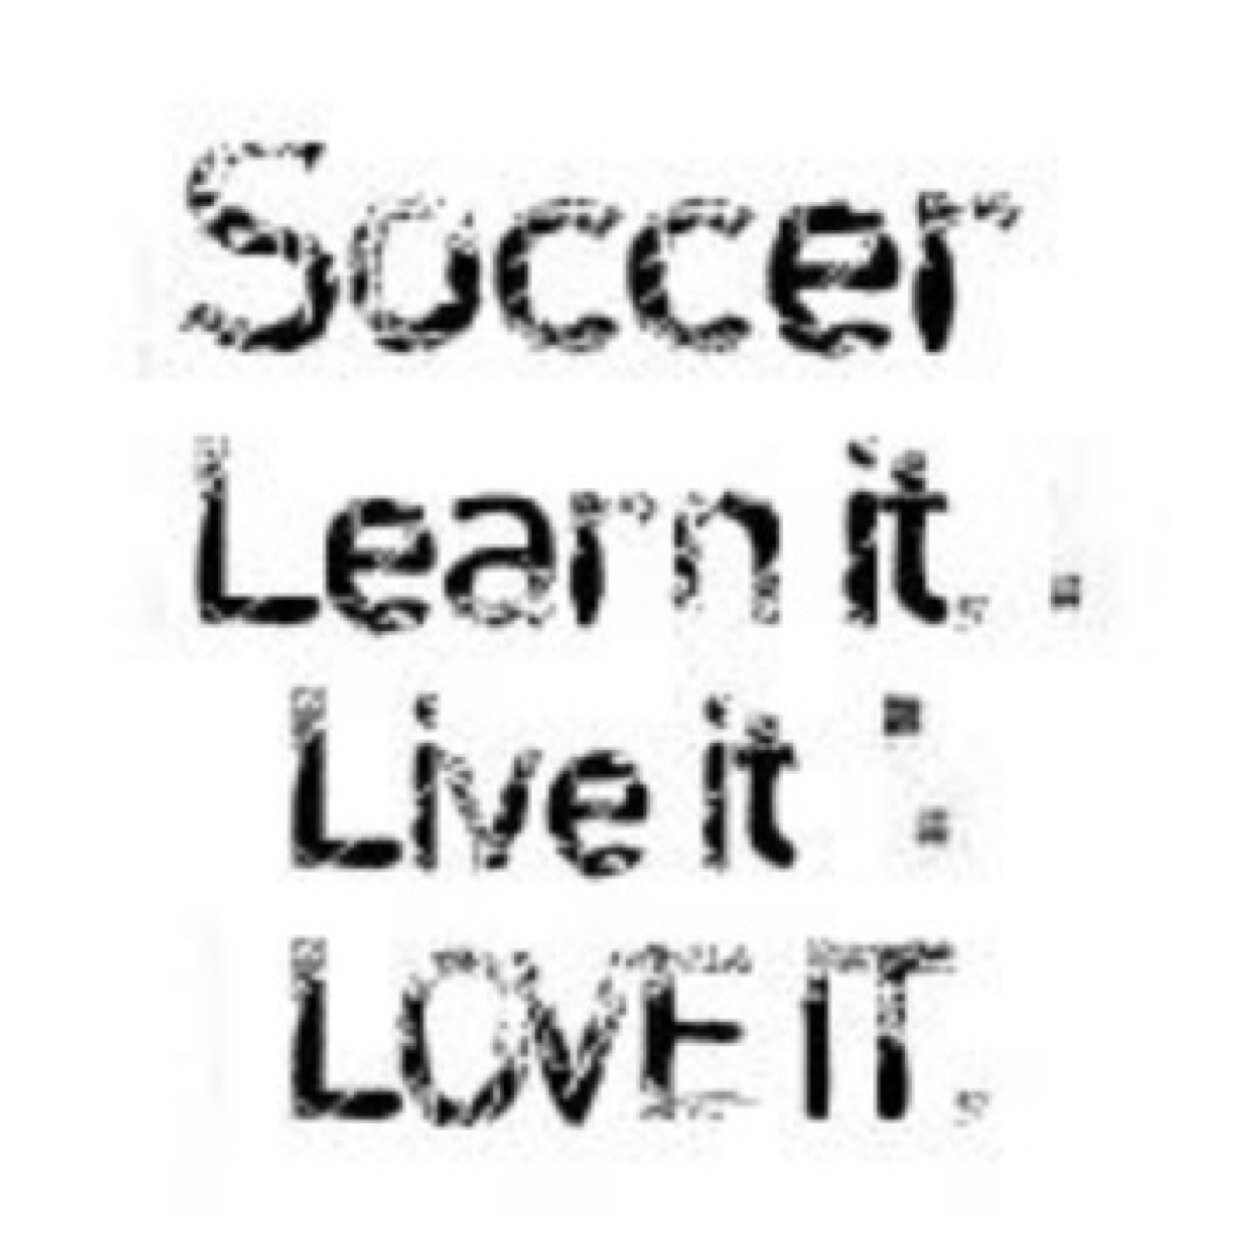 Soccer, Learn It, Live It, Love It